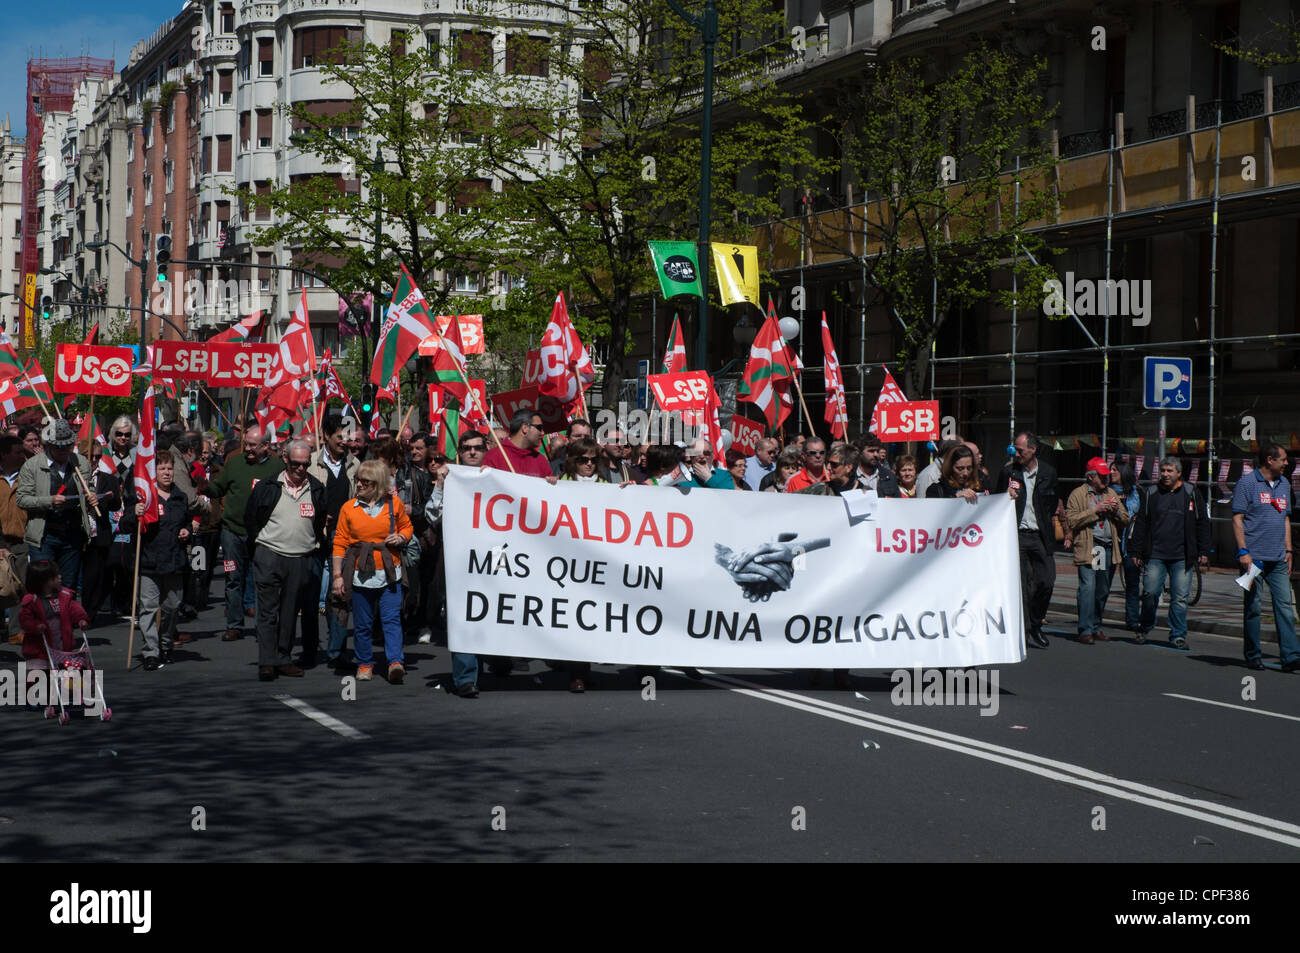 La Fête du travail Bilbao Espagne manifestations pacifiques à travers les rues du centre-ville Banque D'Images